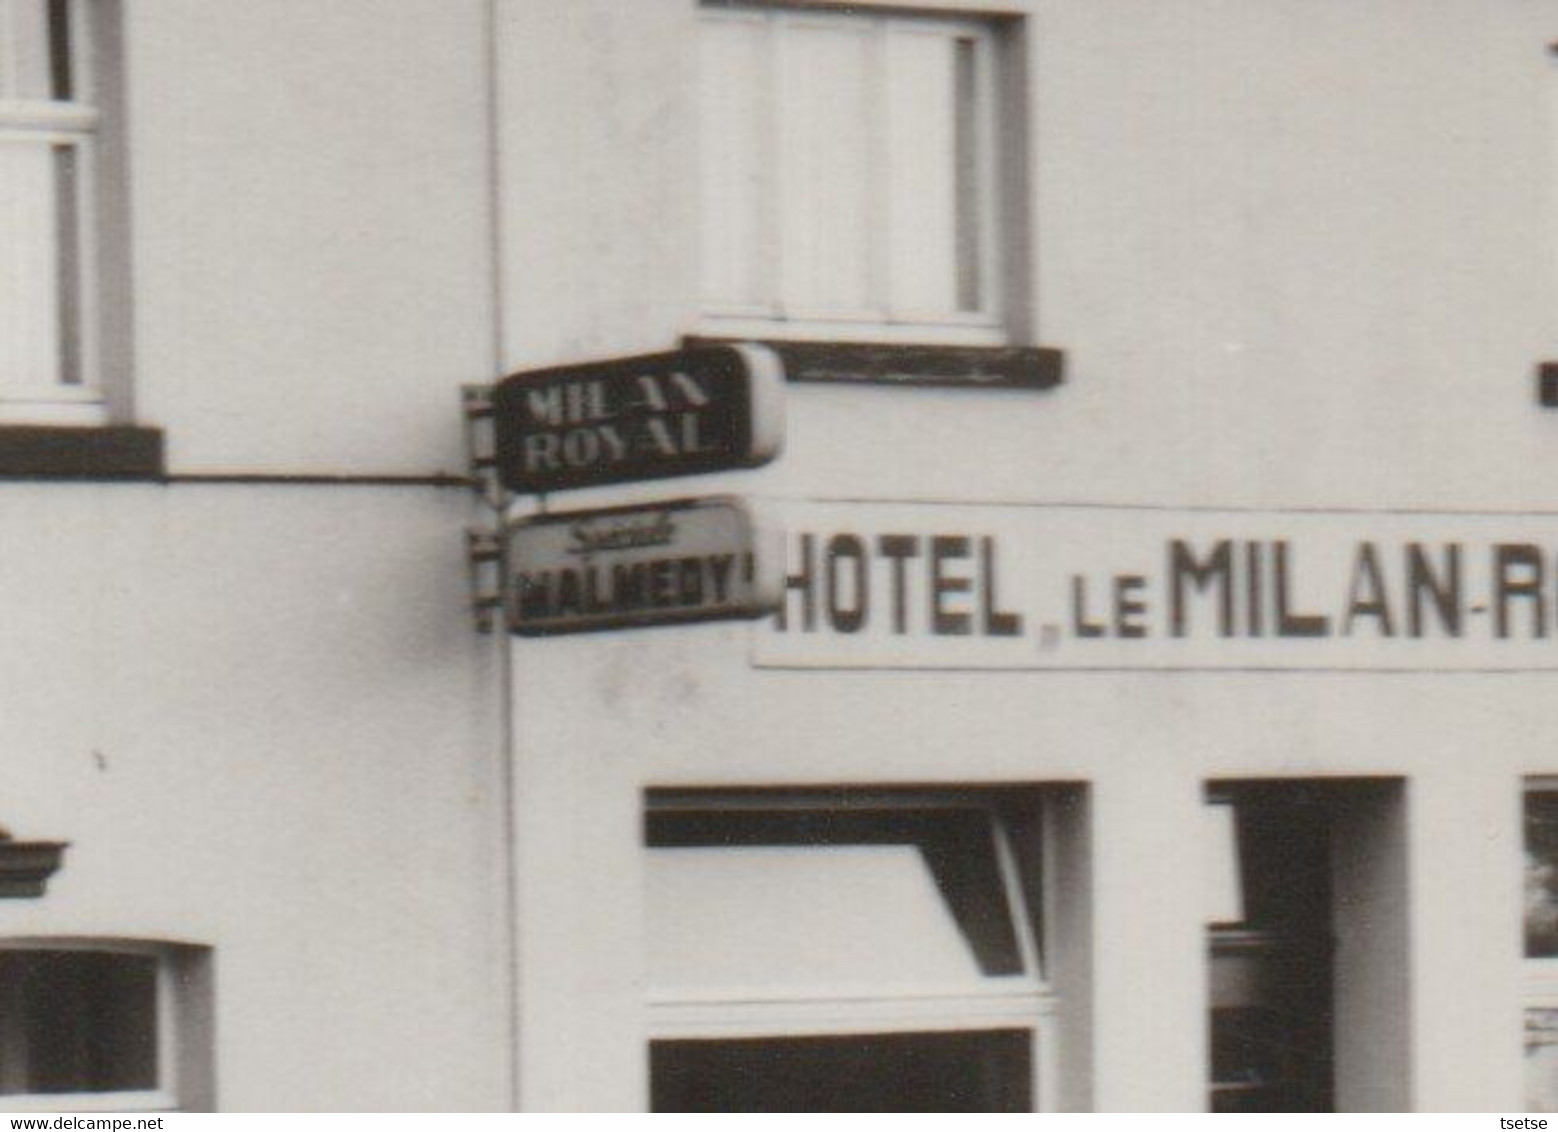 Robertville - Hôtel " Le Milan Royal "- 1973 / Pub Bières Spécial Malmédy - Weismes